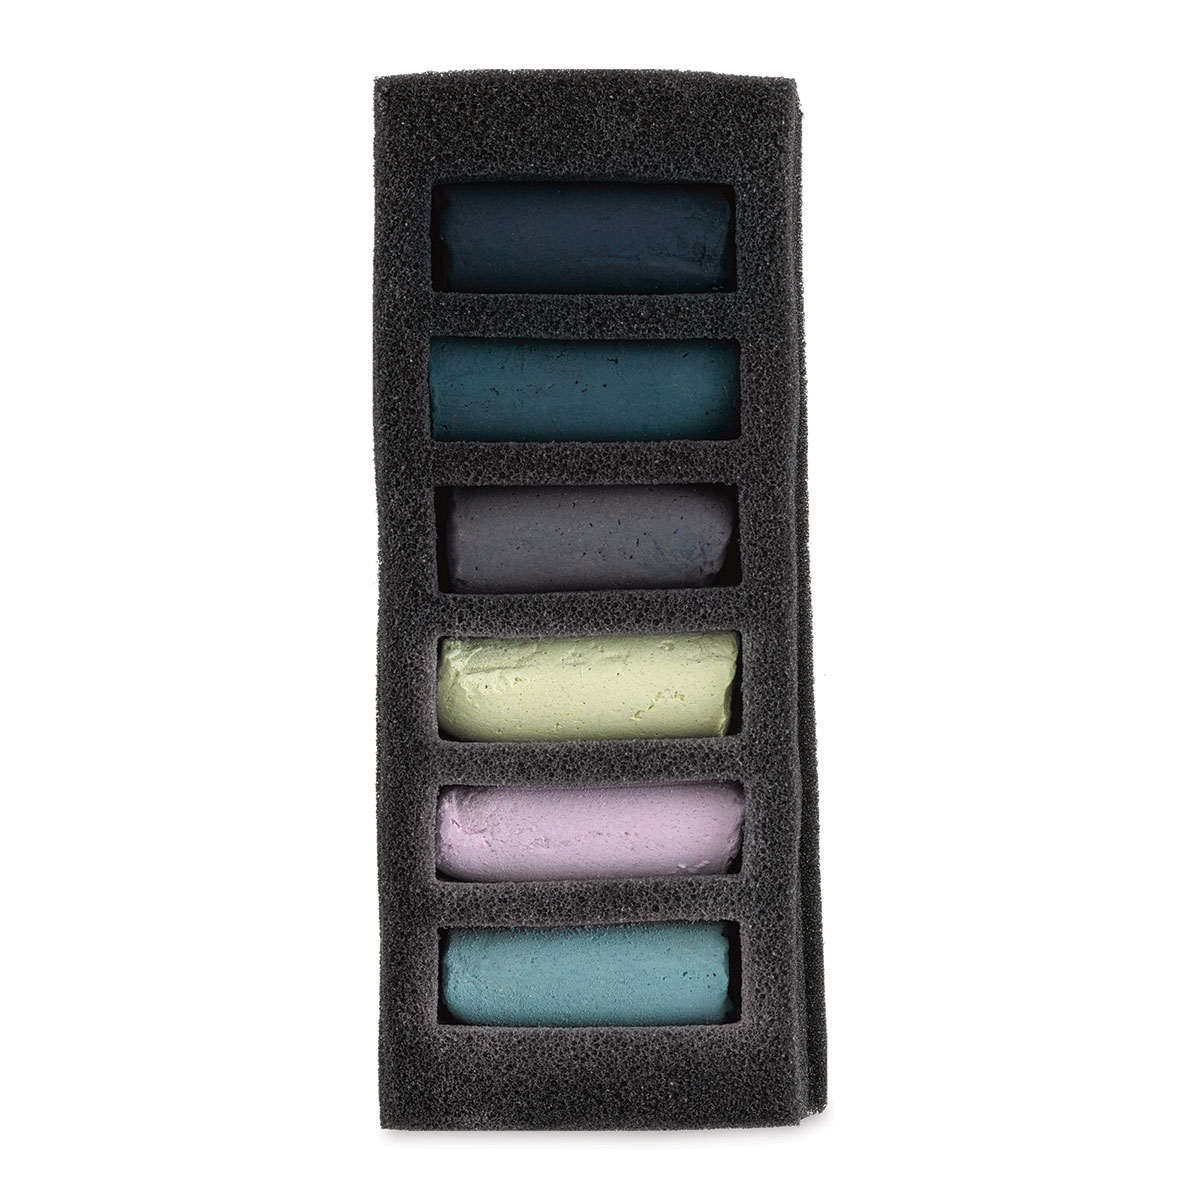 Sennelier Soft Pastels - Set of 40, Assorted Colors, Half Sticks